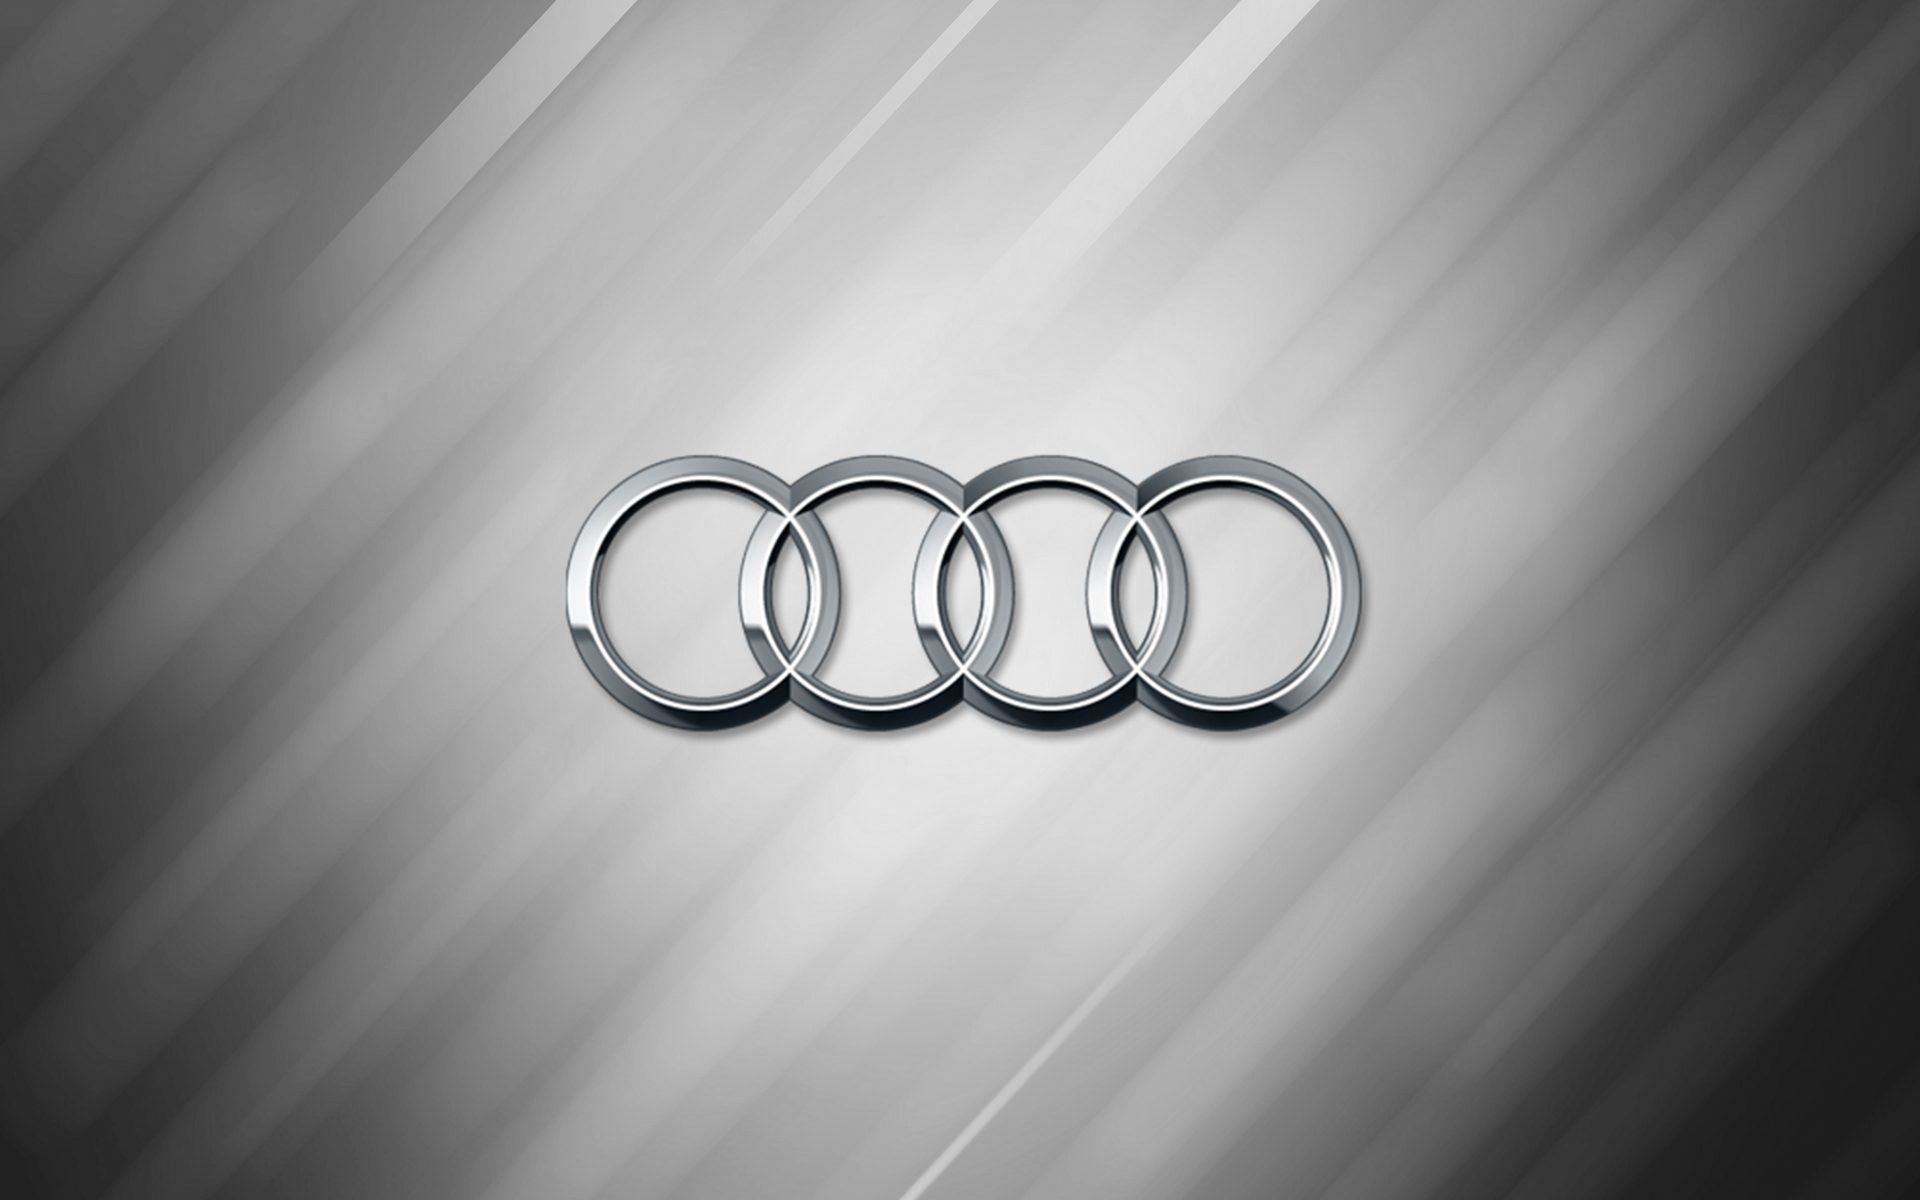 Audi Rings Wallpaper